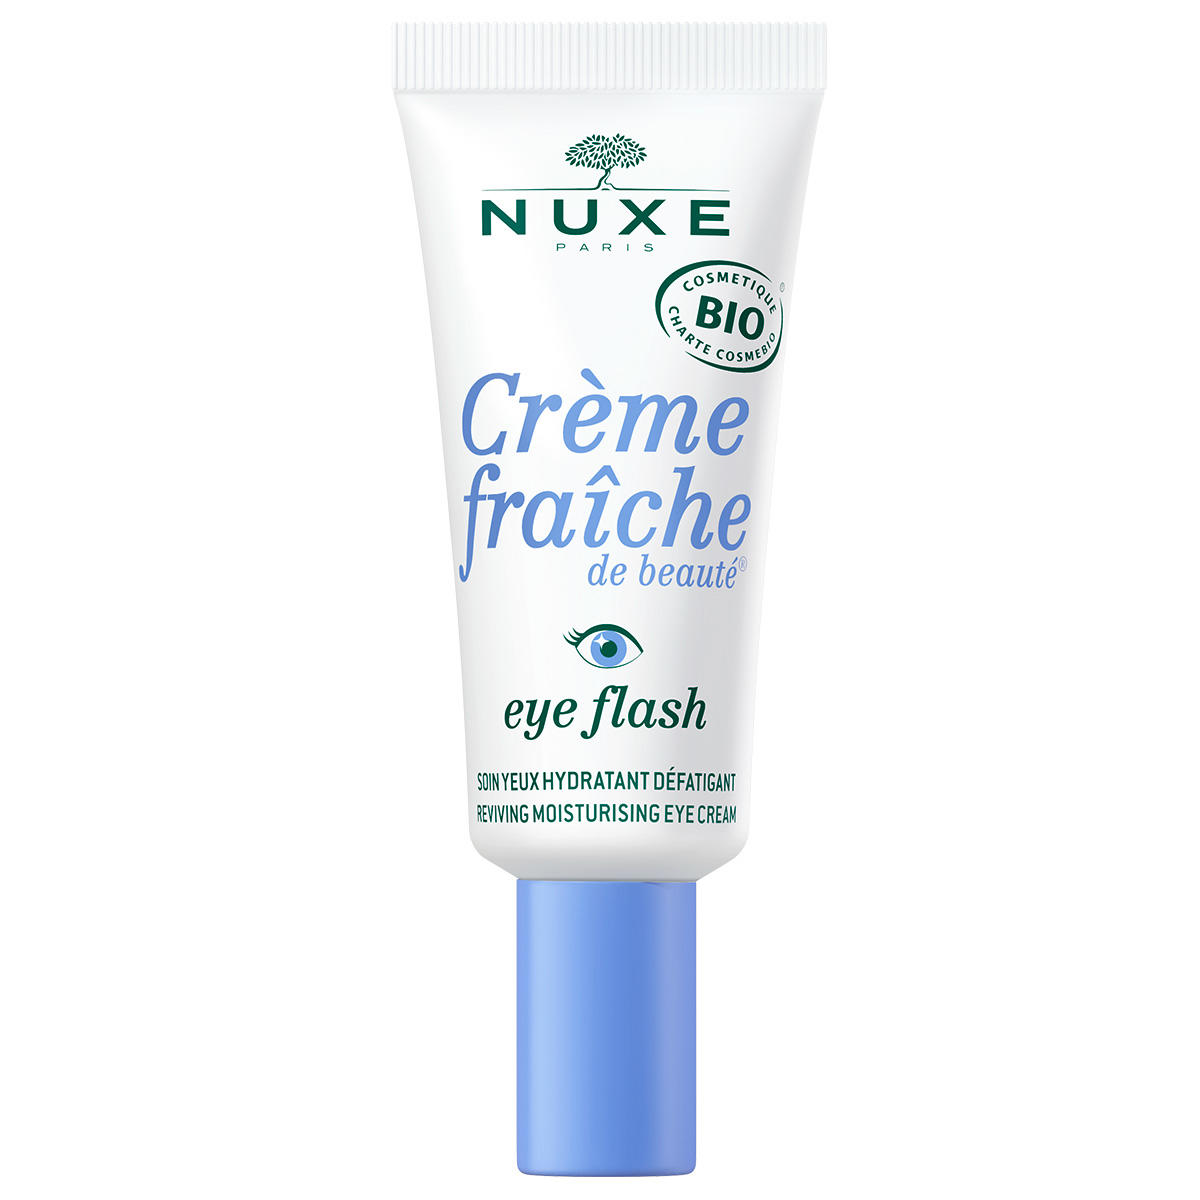 NUXE Crème Fraîche de Beauté Soin Yeux Hydratant Défatigant  15 ml - 1